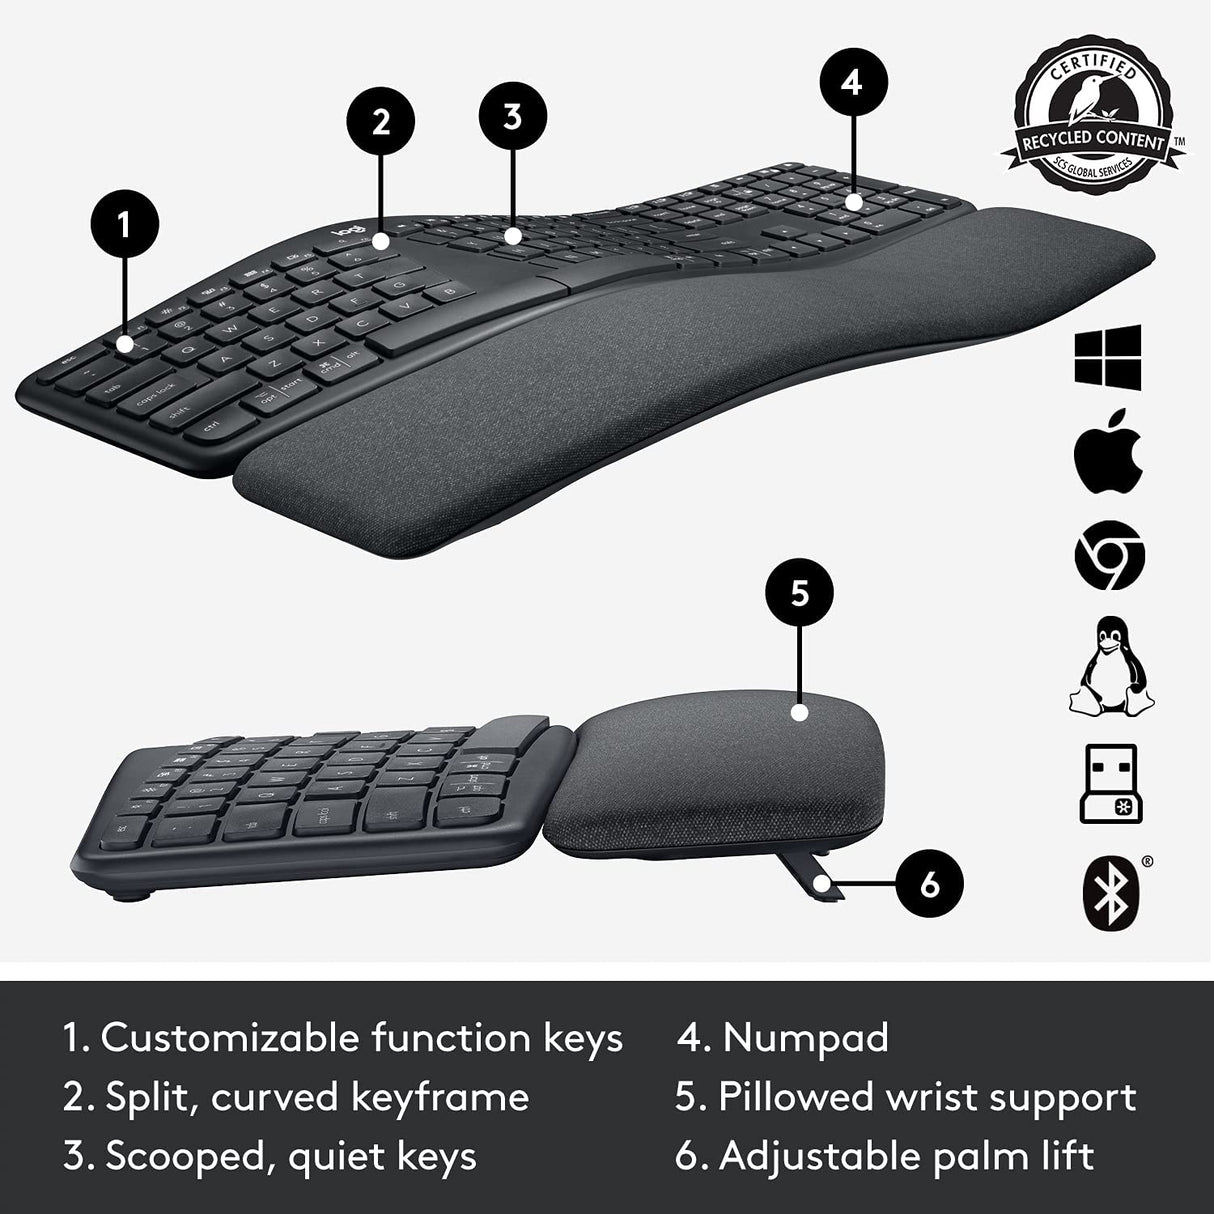 Logitech ERGO K860 Wireless Keyboard - black